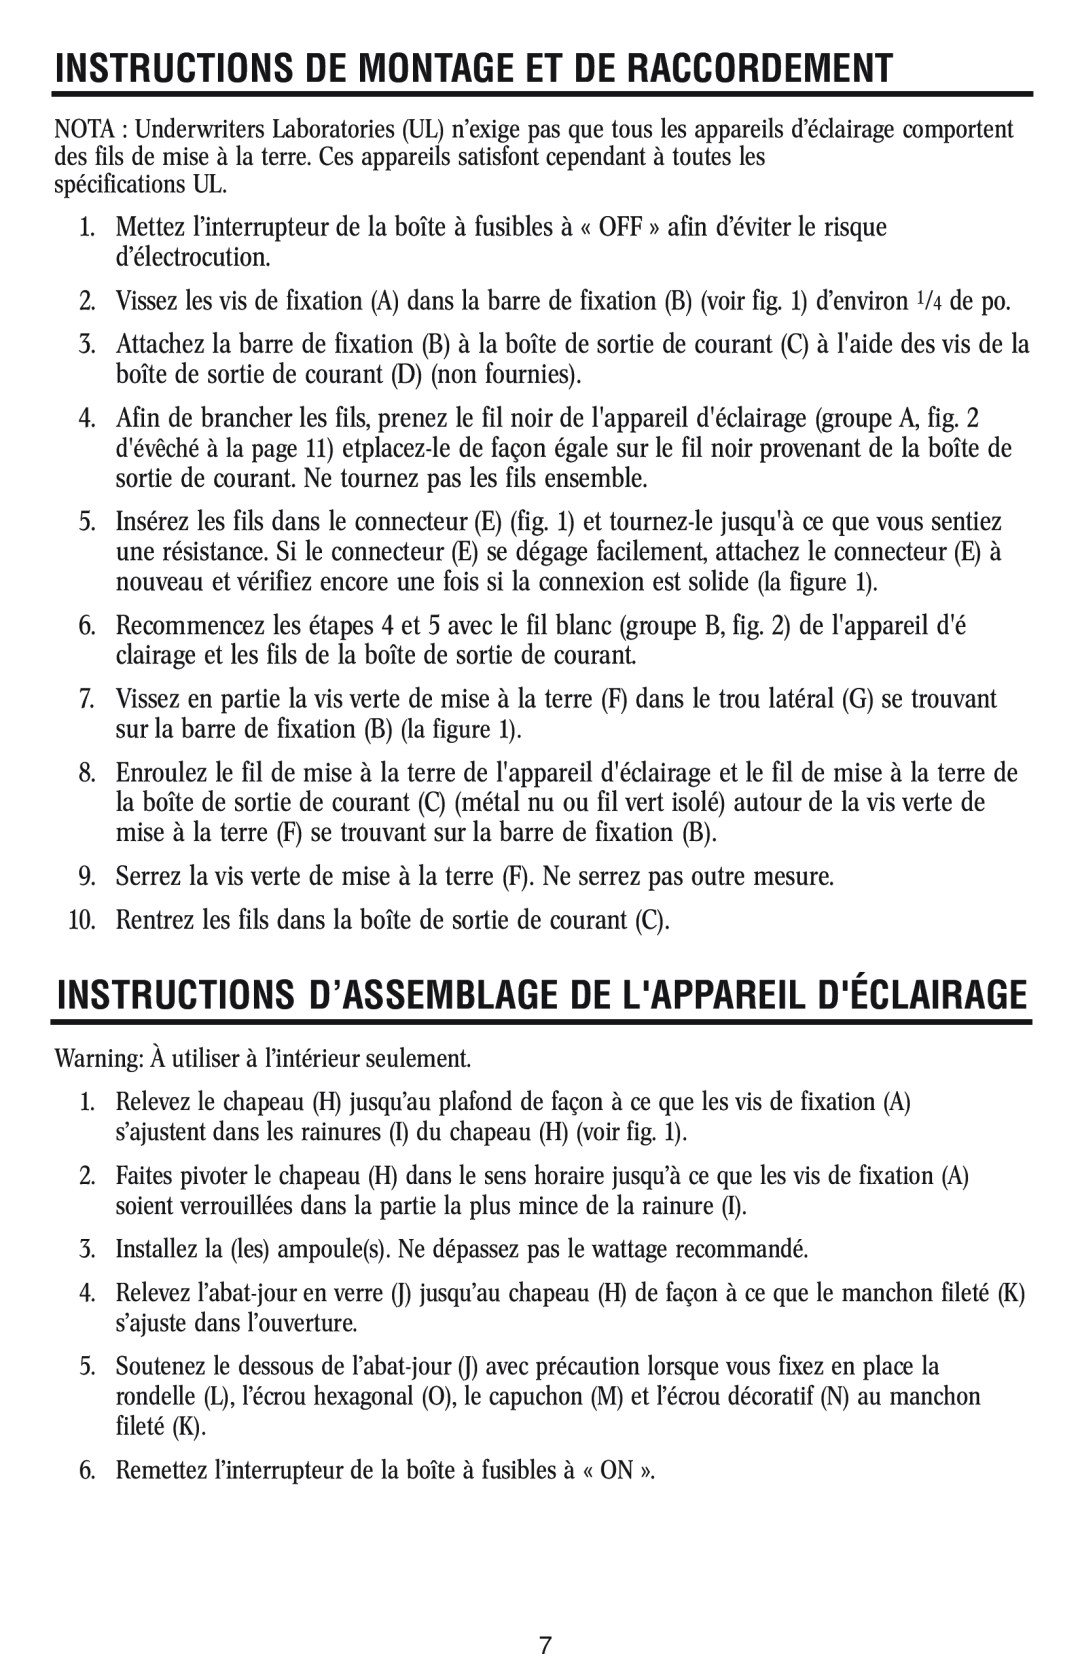 Westinghouse 1/14/04 Instructions D’Assemblage De Lappareil Déclairage, Instructions De Montage Et De Raccordement 